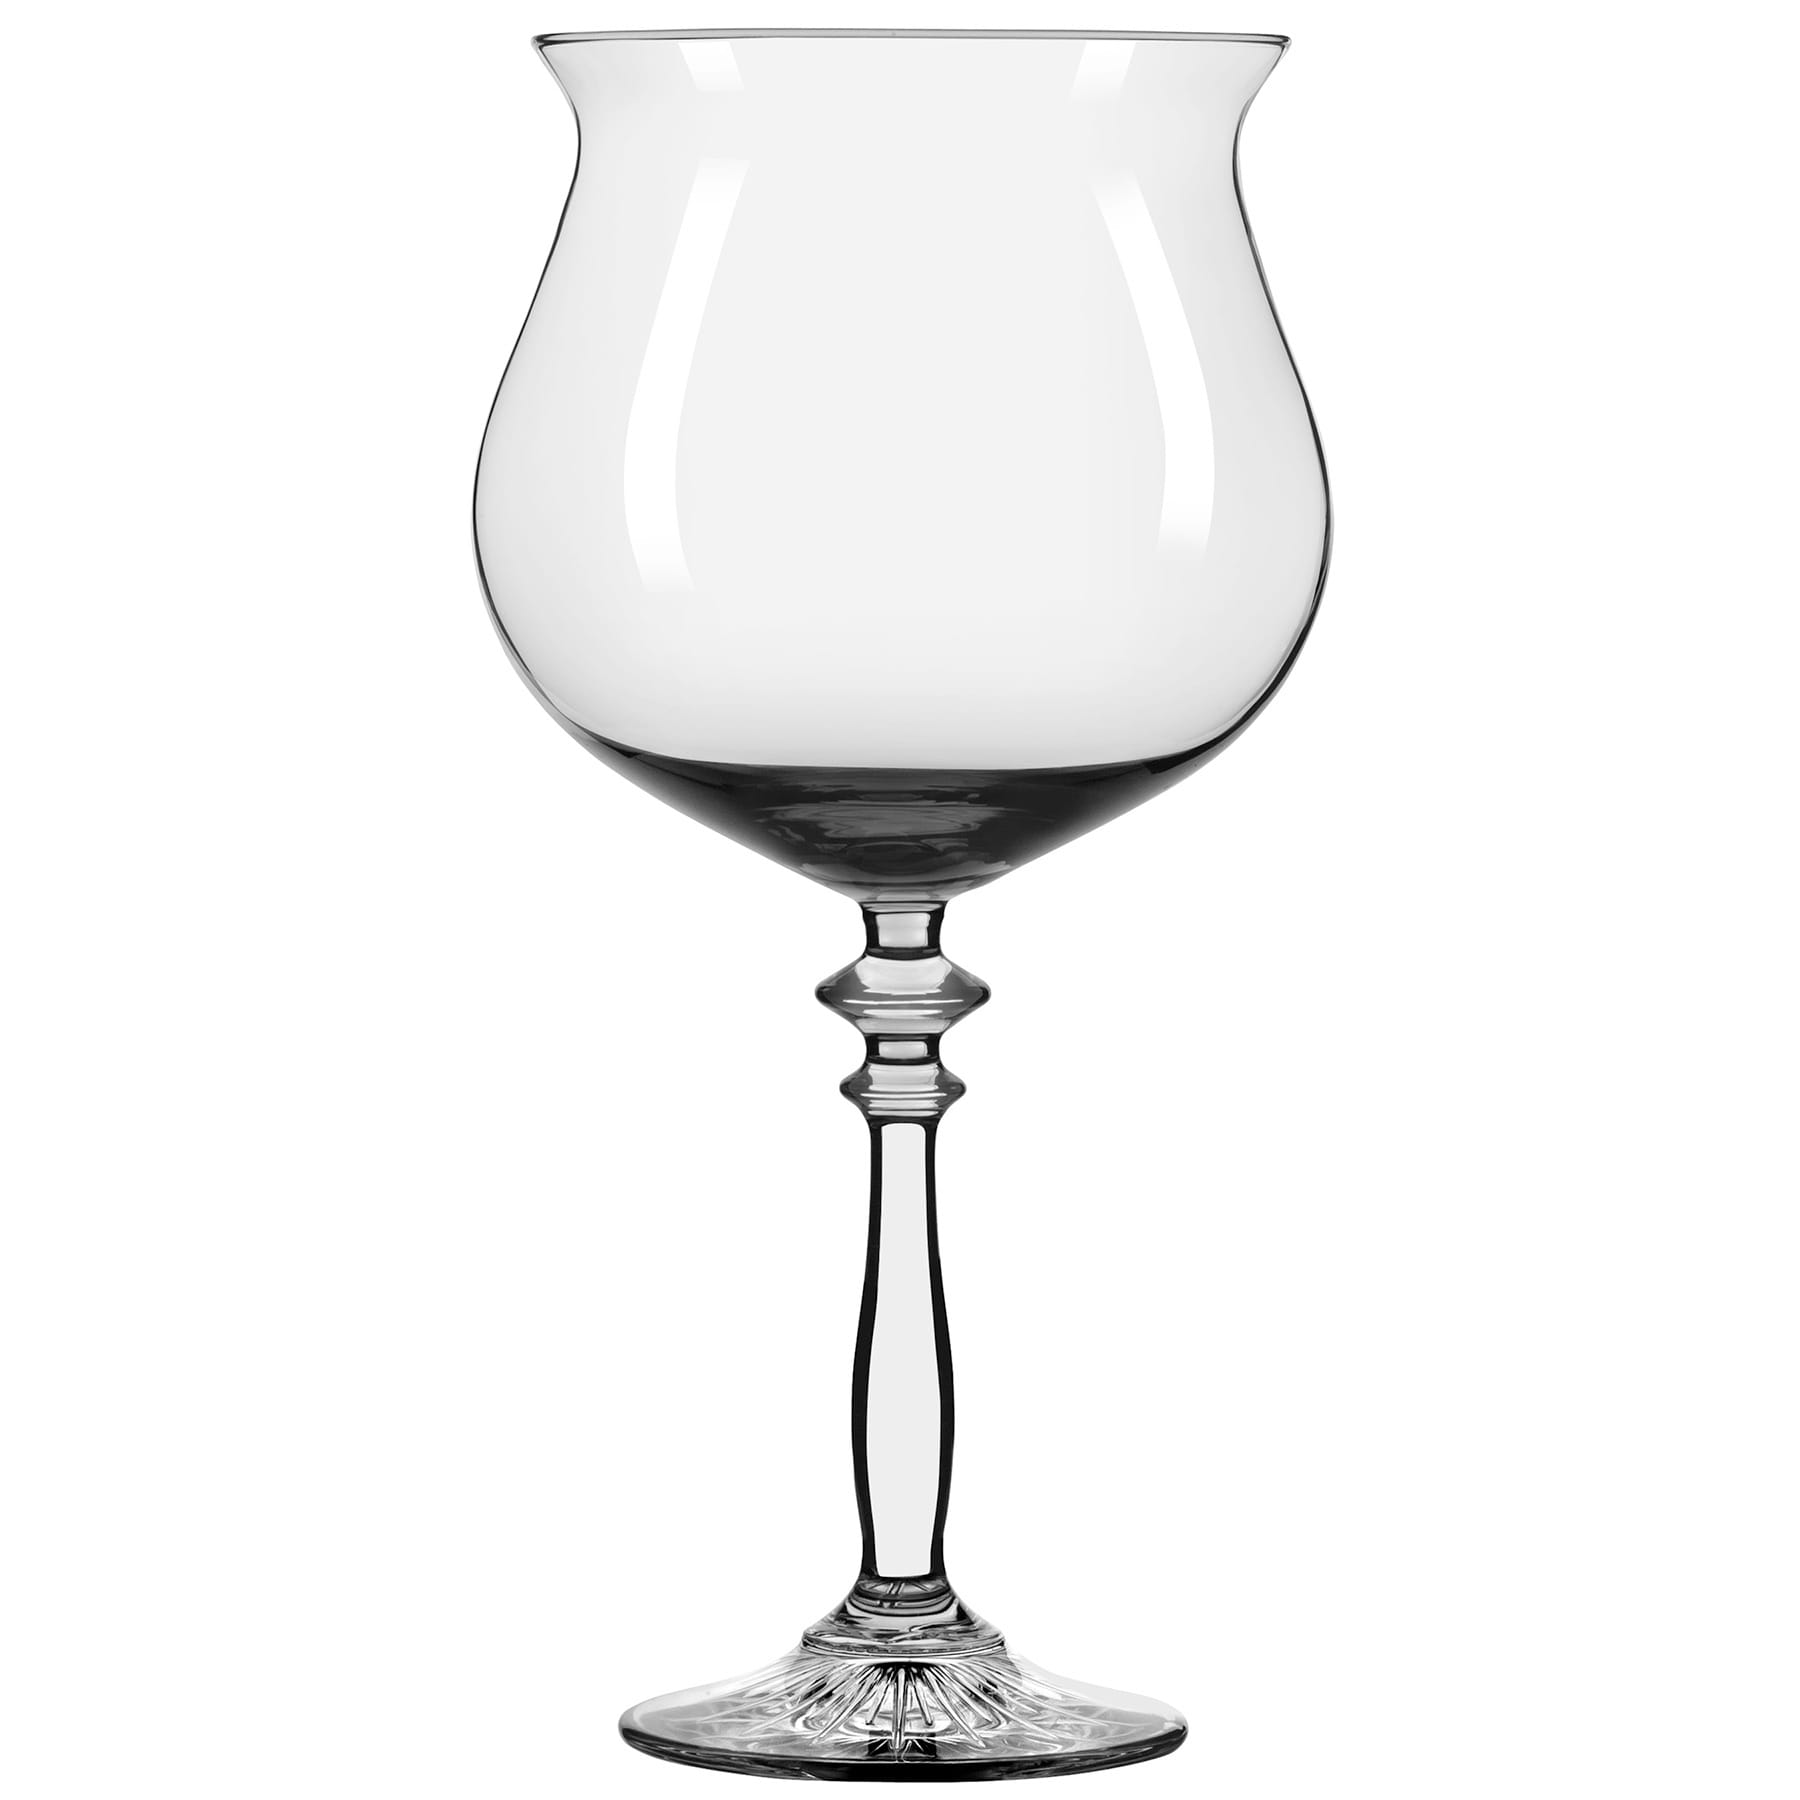 Libbey 502008 1924 Vintage 20.75 Oz. Gin & Tonic Glass